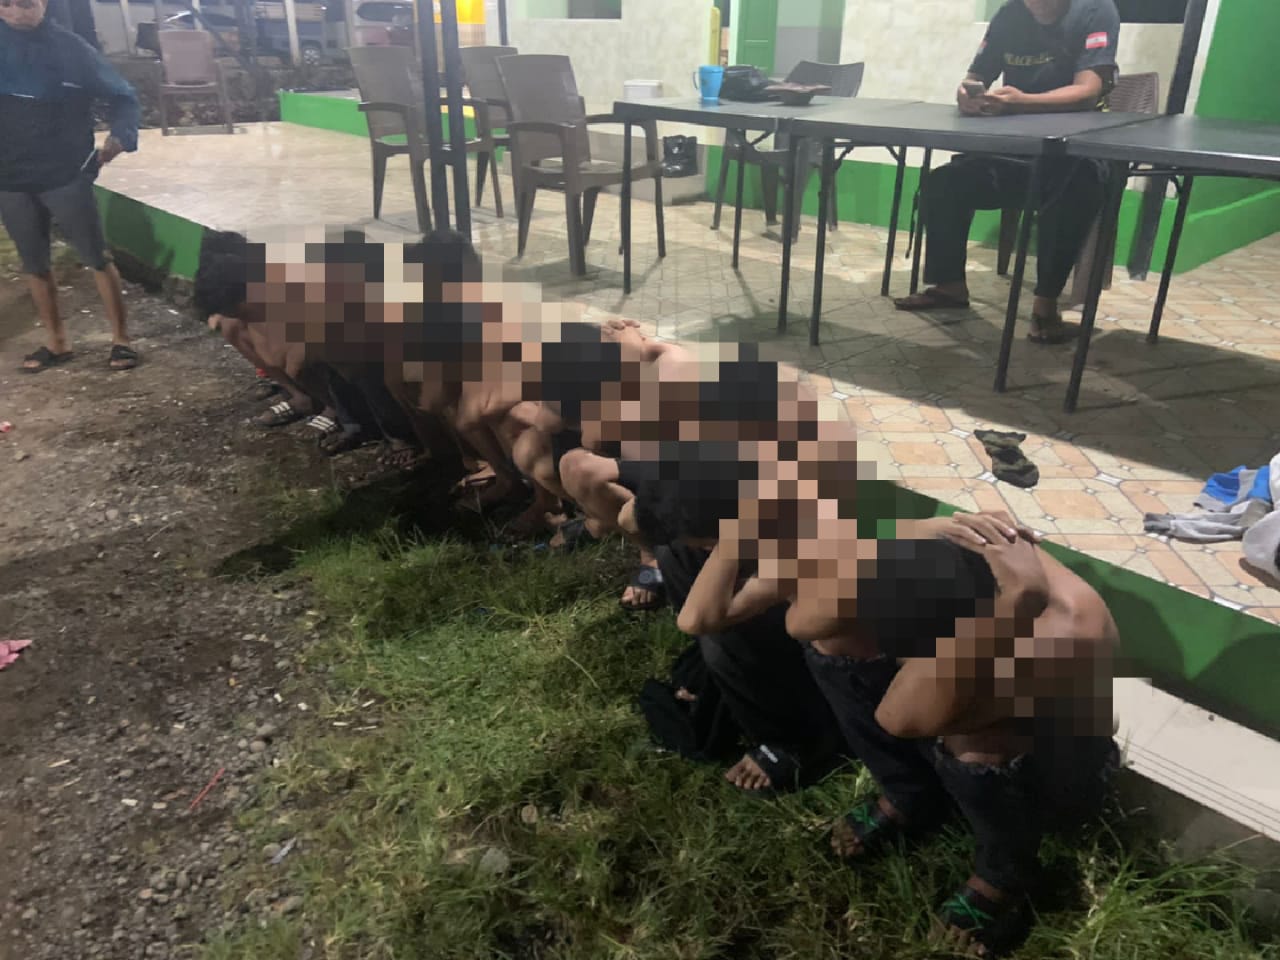 Kerap Bikin Onar, 9 Remaja Pembawa Busur di Gowa Diciduk Polisi